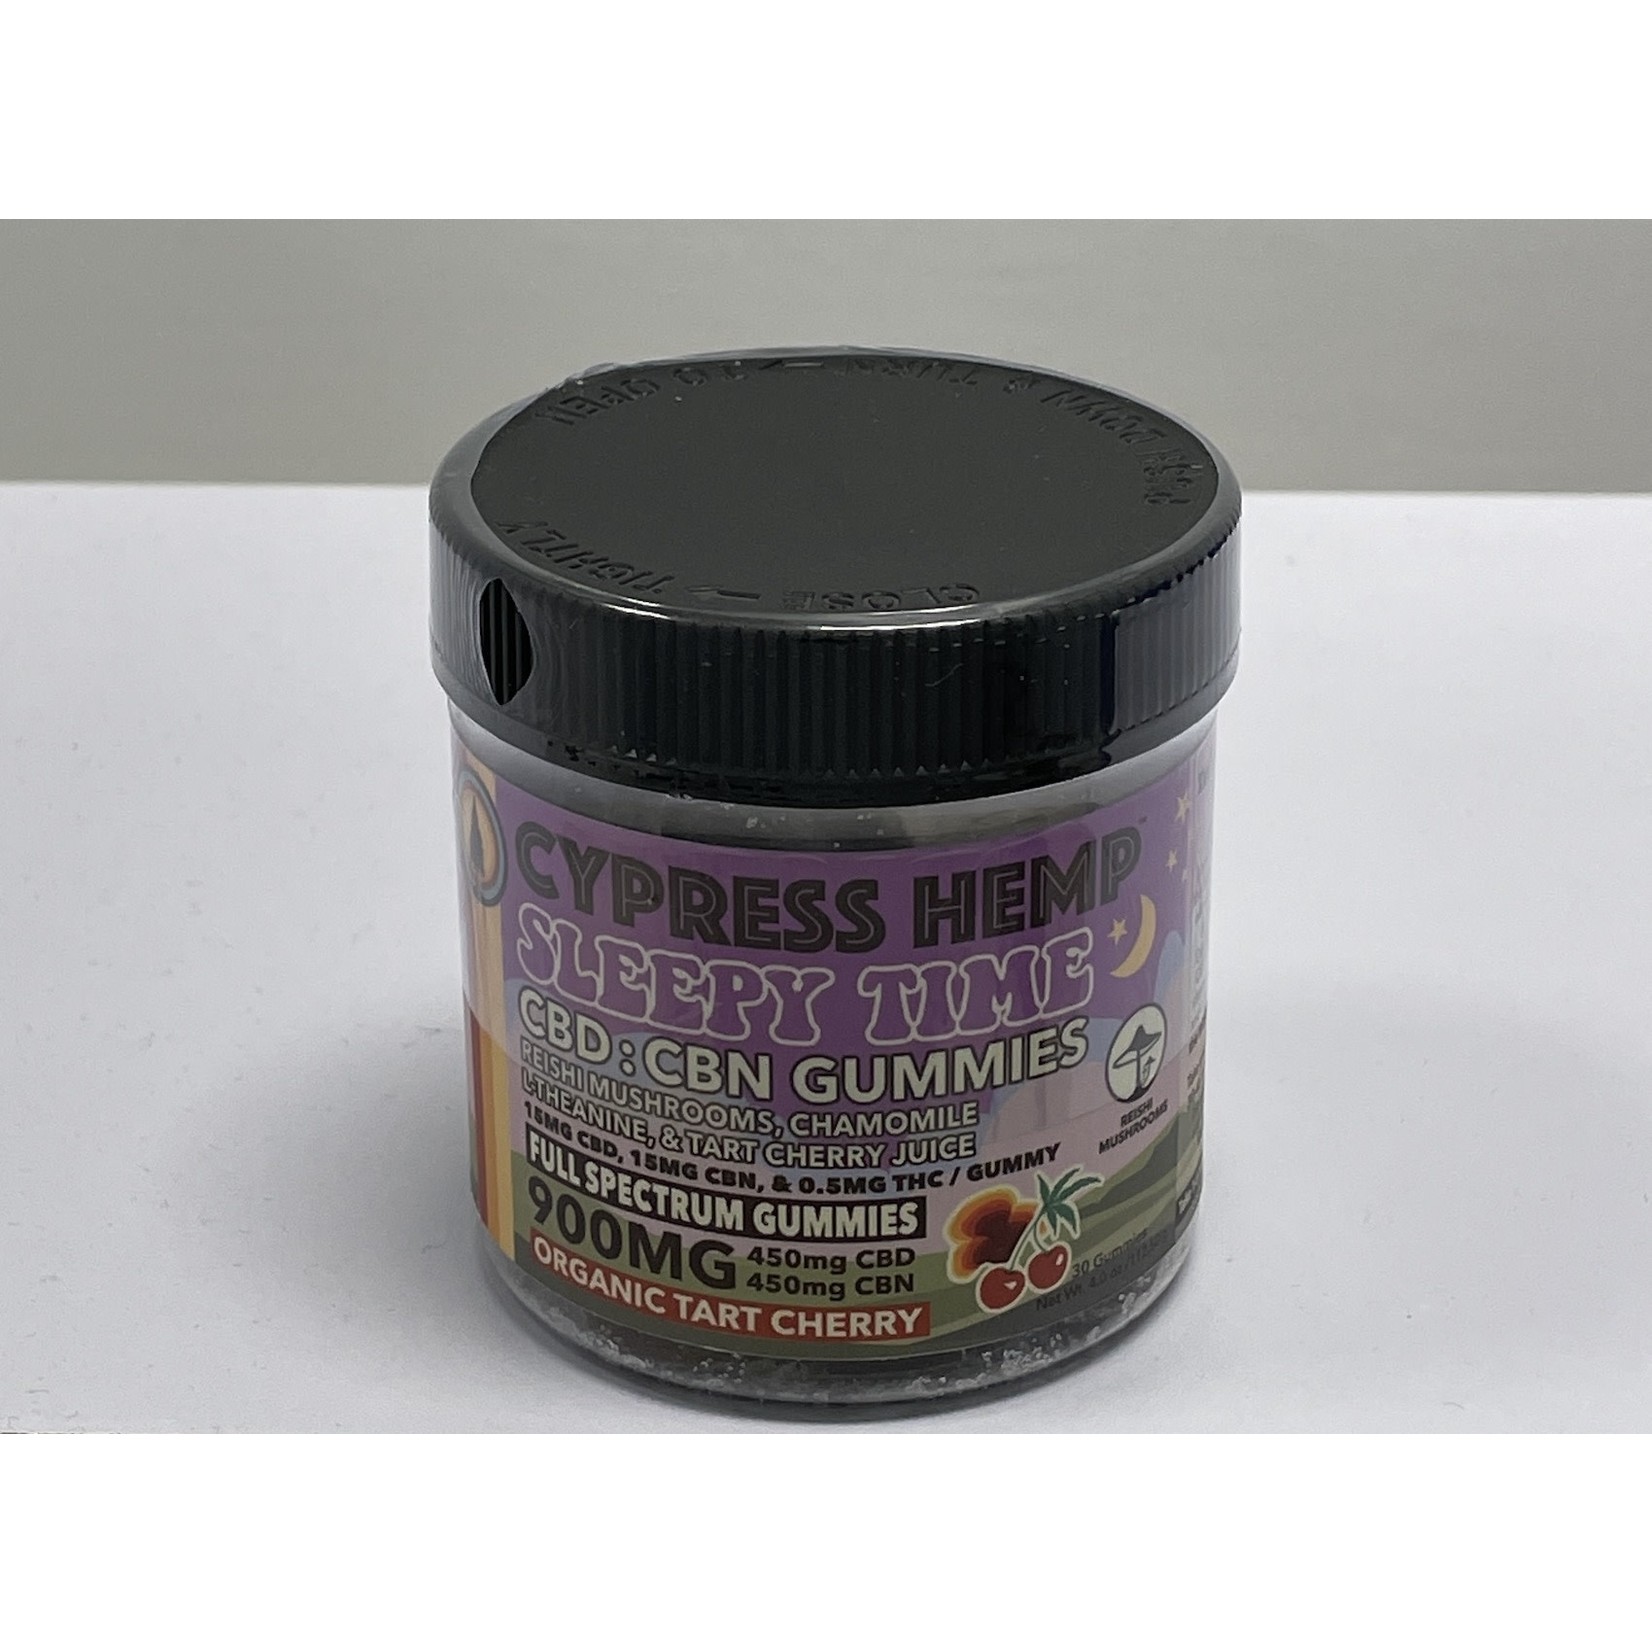 Cypress Hemp Cypress Hemp Sleepy Time CBD CBN Gummies Tart Cherry 900mg 30ct